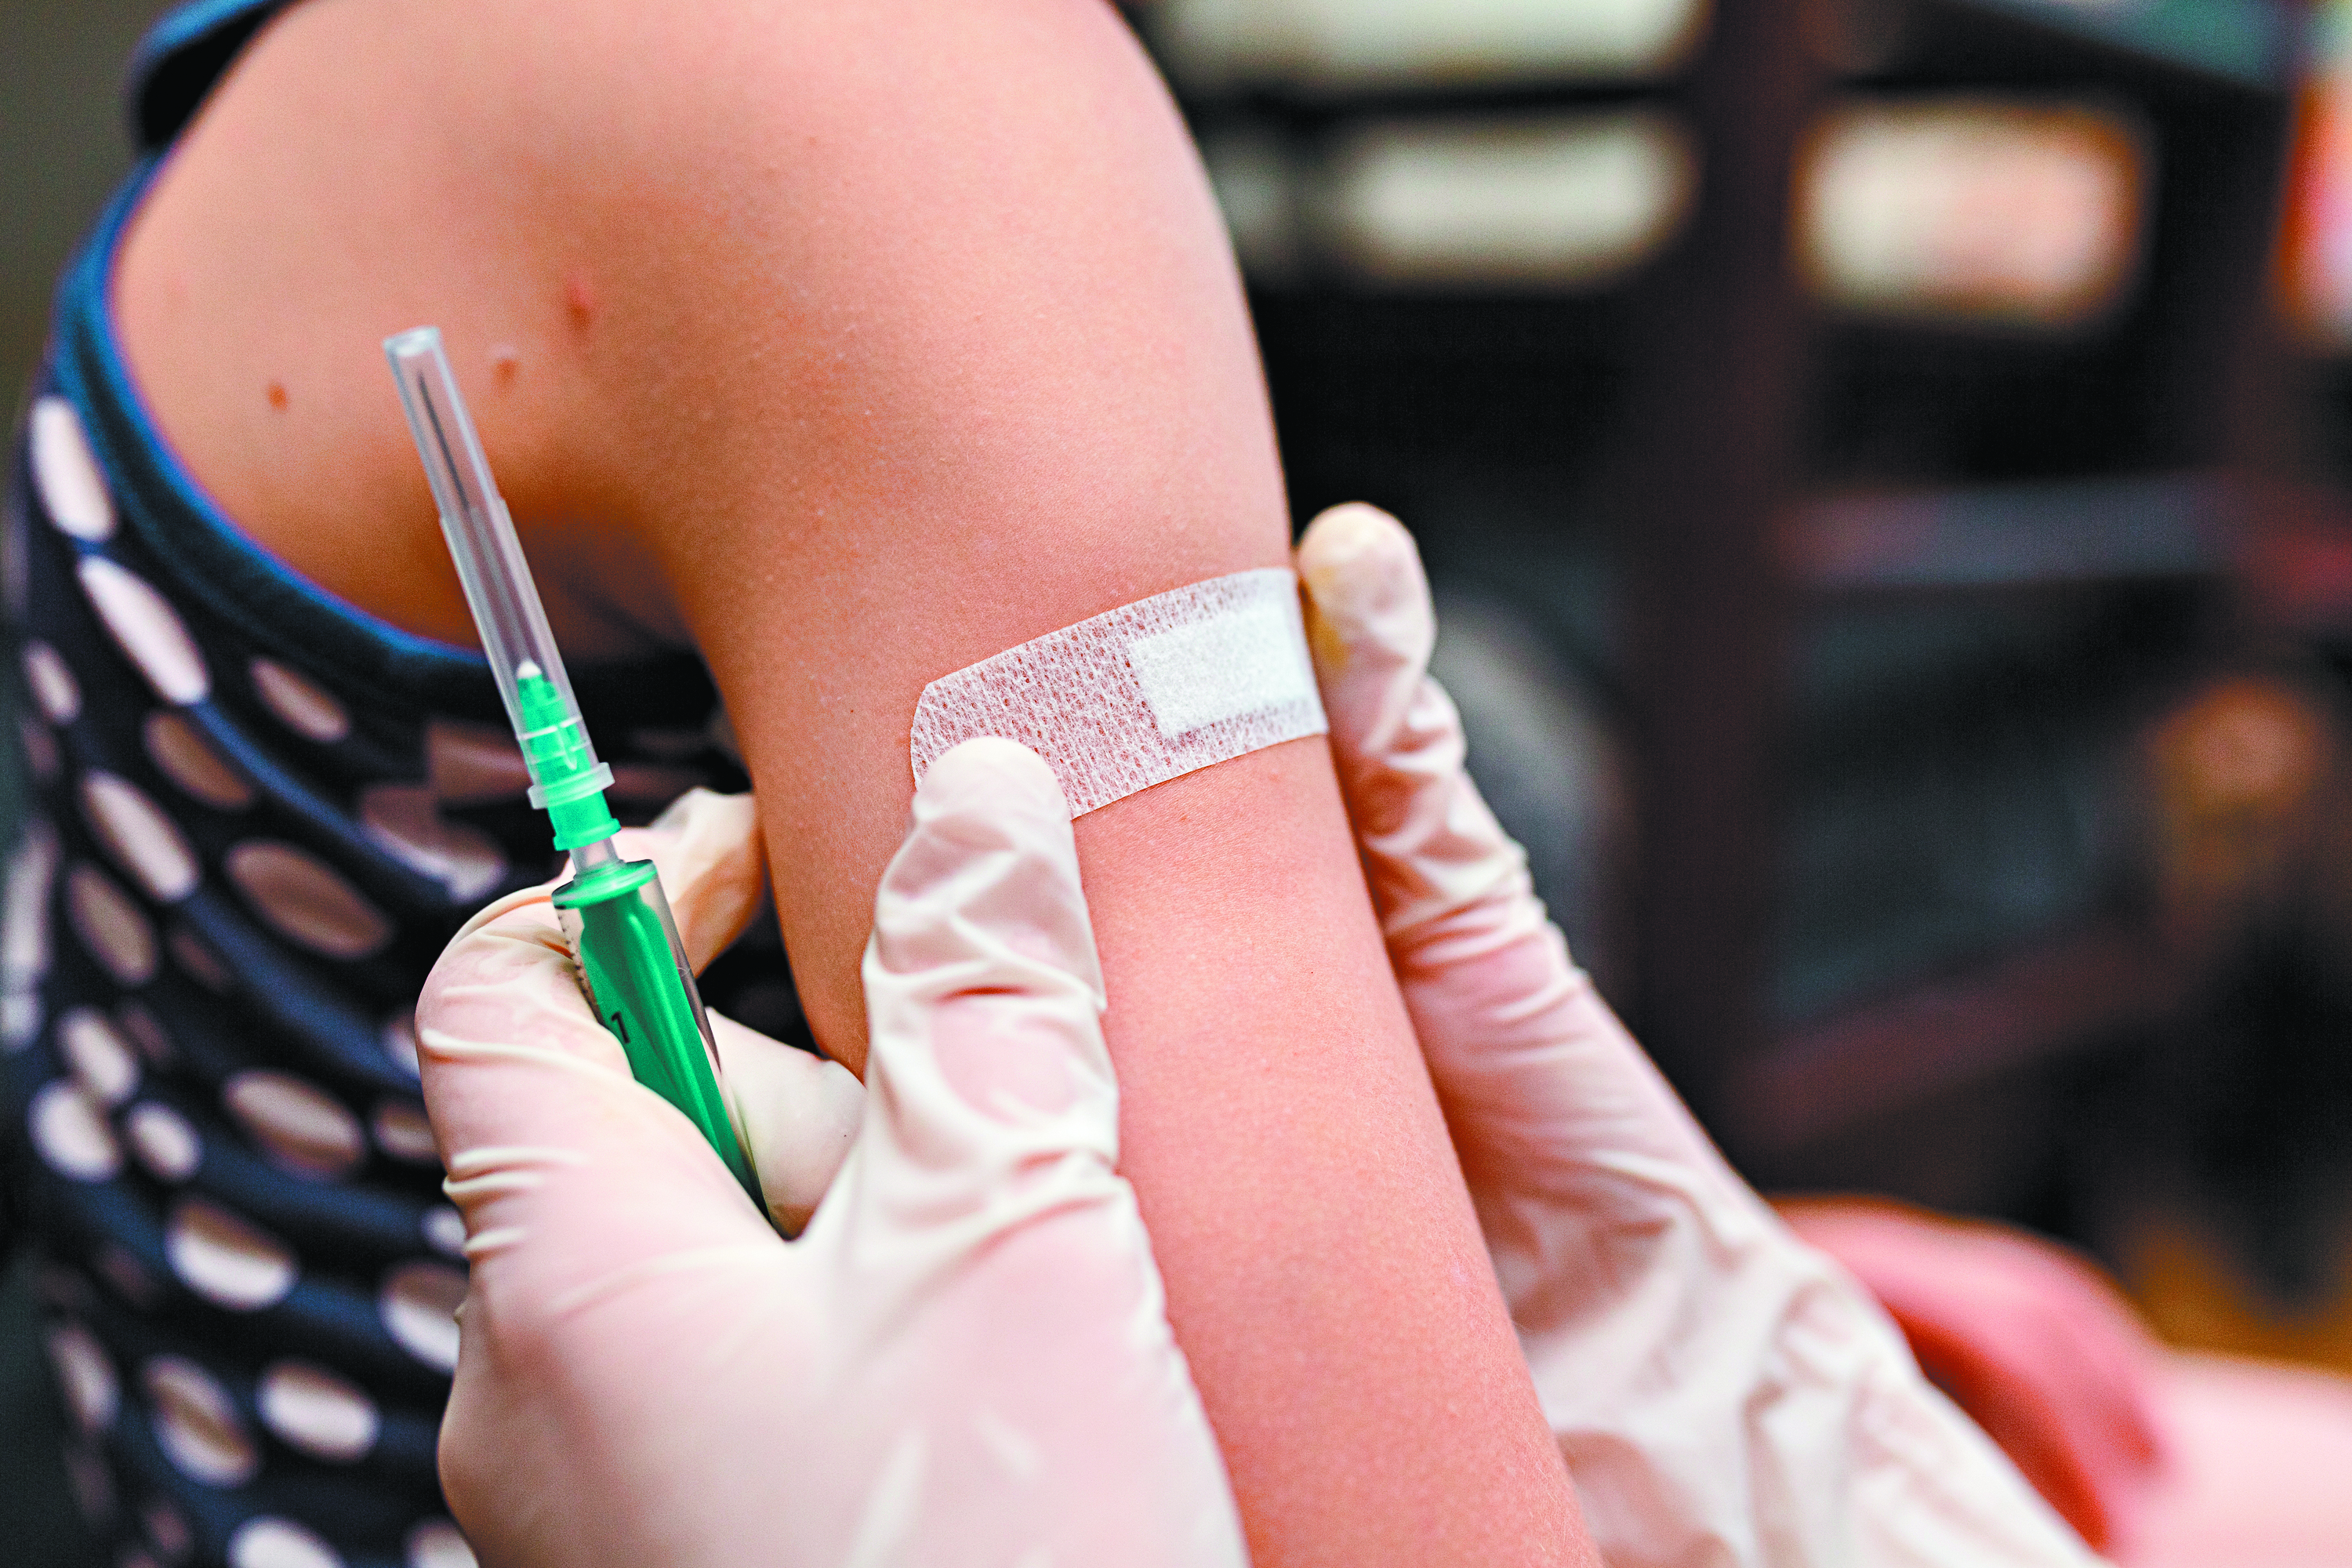 Θεμιστοκλέους – Αύξηση 200% στους εμβολιασμούς από τις προηγούμενες εβδομάδες – Πόσο ισχύει το πιστοποιητικό